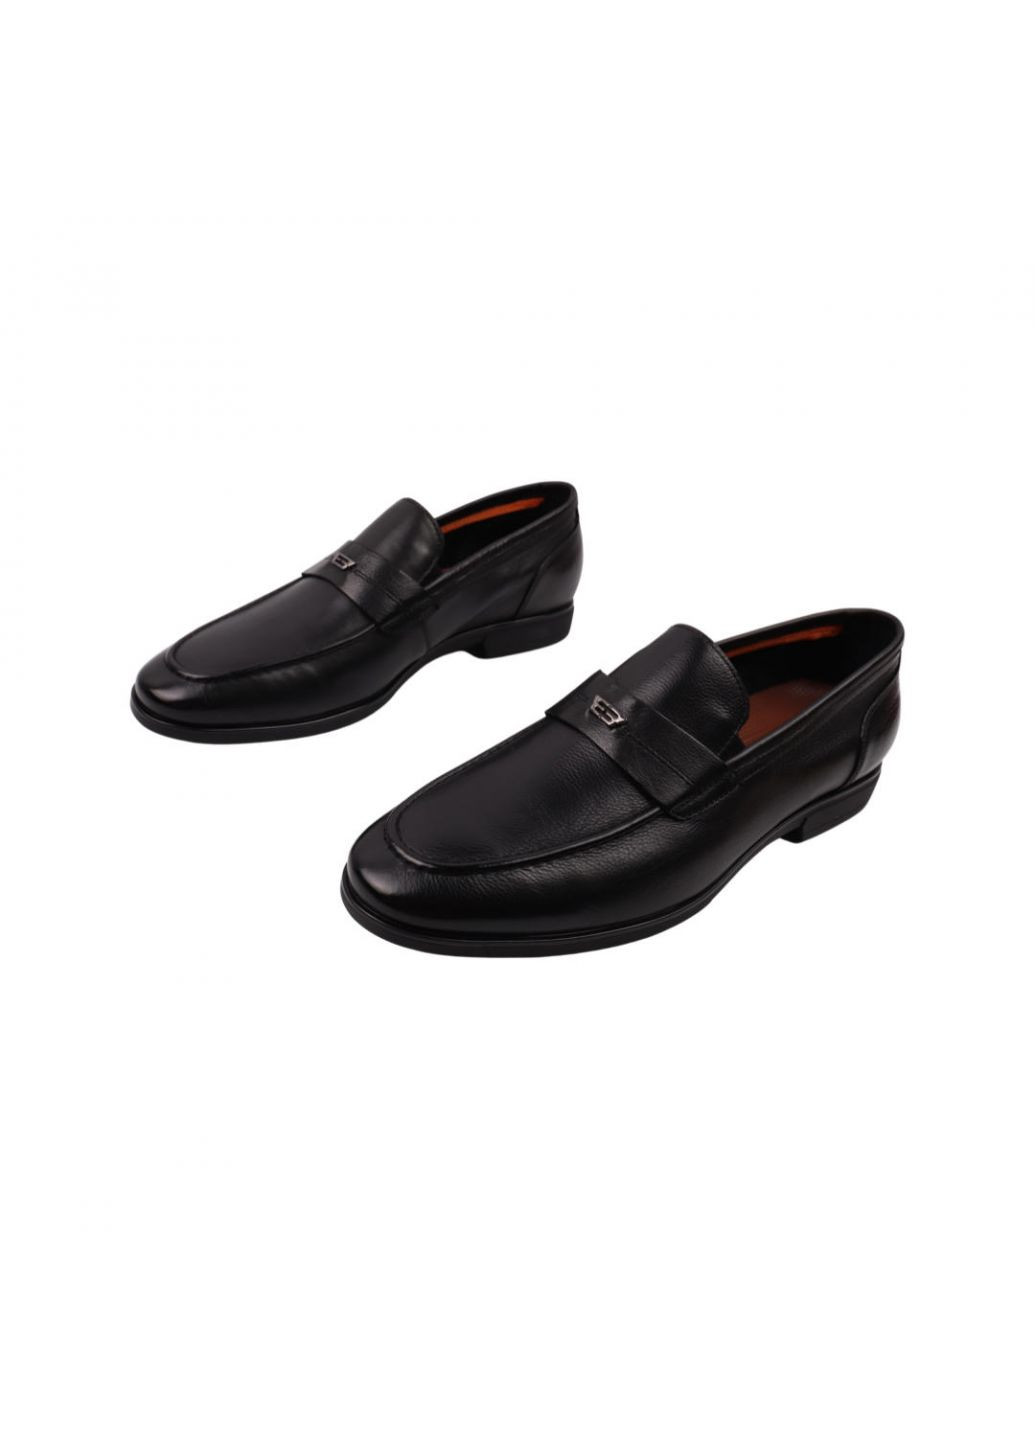 Черные туфли мужские черные натуральная кожа Cosottinni